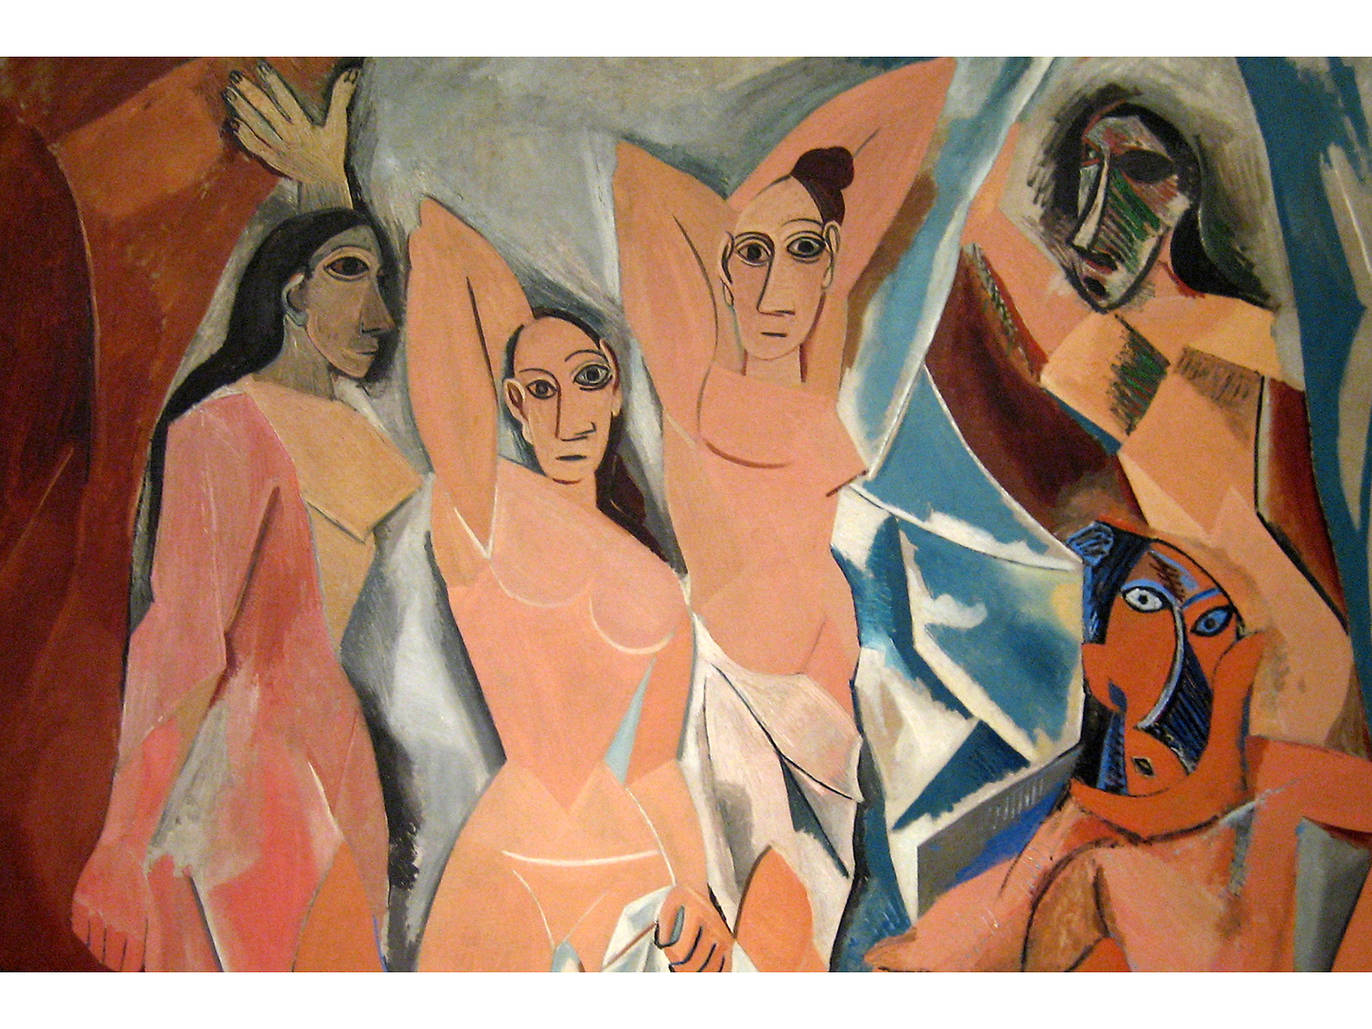 Les Demoiselles dAvignon 1907 - Pablo Picasso image